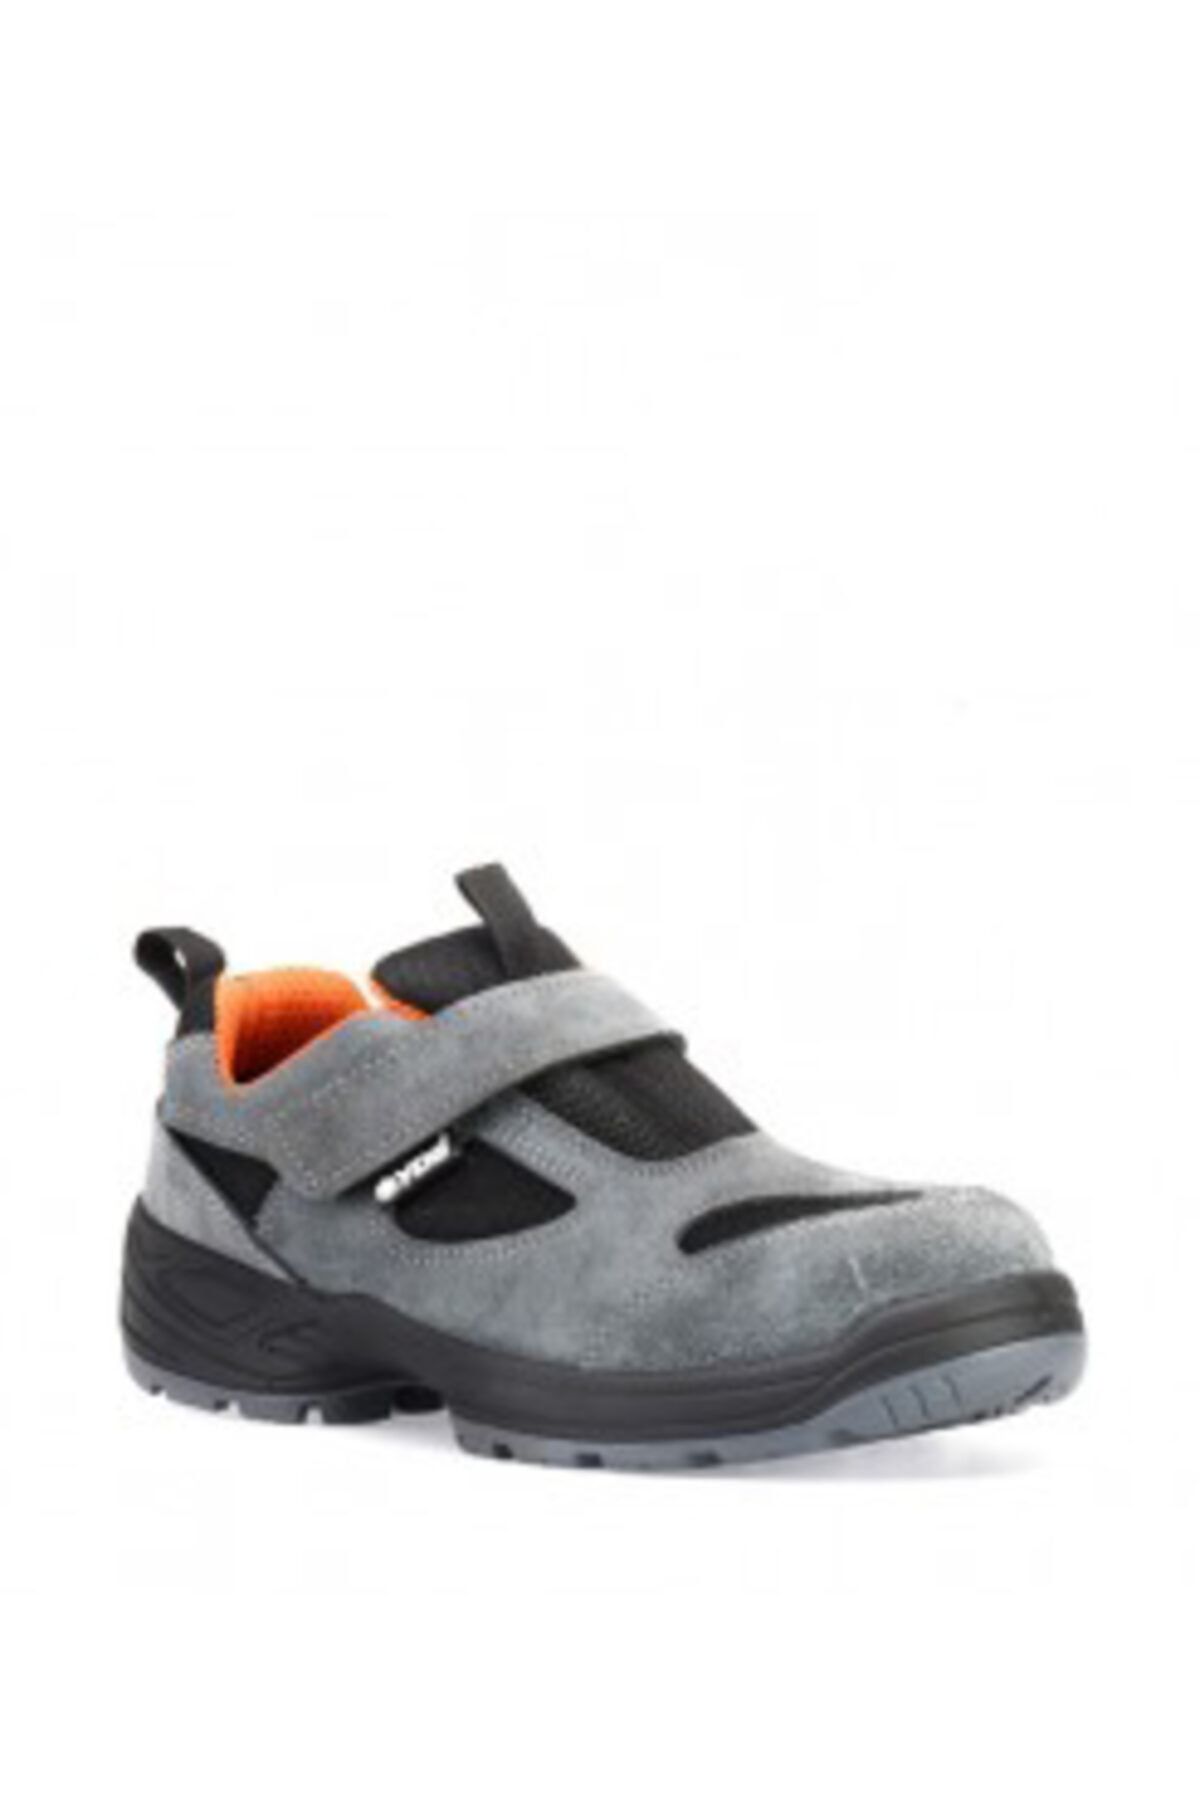 YDS Gpp 05 Gh Nv Çelik Burunlu Iş Ayakkabısı